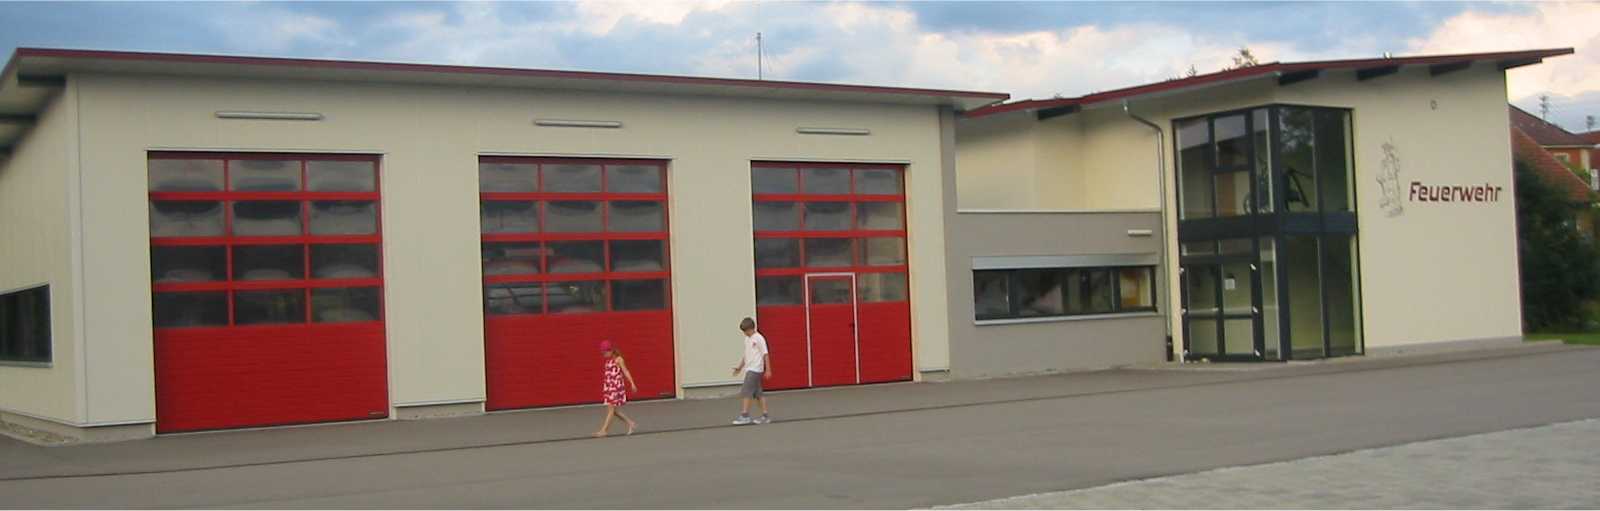 Krumbach - Freiwillige Feuerwehr